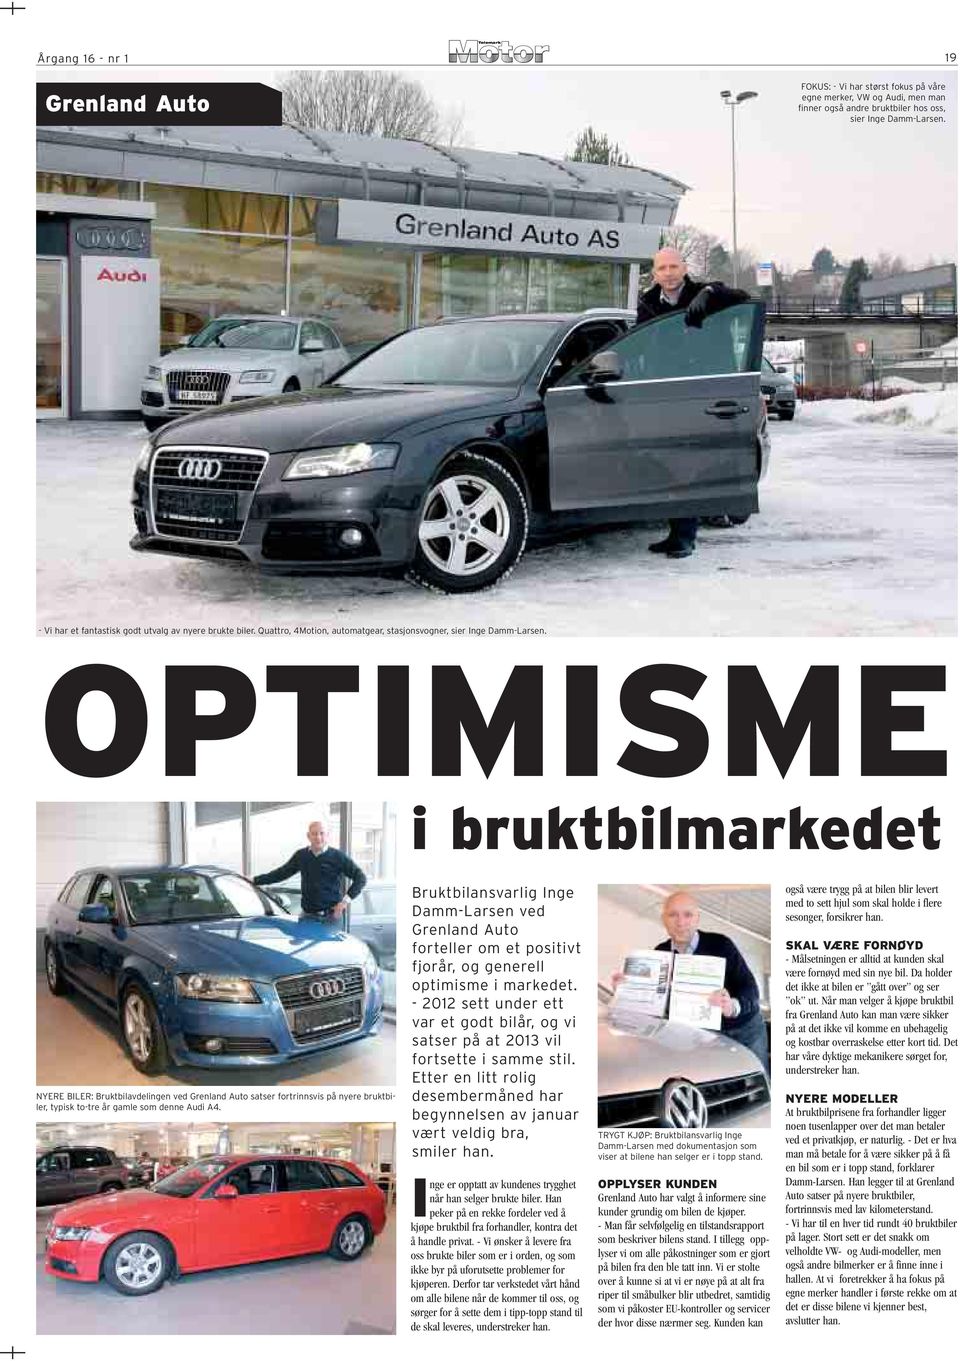 OPTIMISME i bruktbilmarkedet NYERE BILER: Bruktbilavdelingen ved Grenland Auto satser fortrinnsvis på nyere bruktbiler, typisk to-tre år gamle som denne Audi A4.